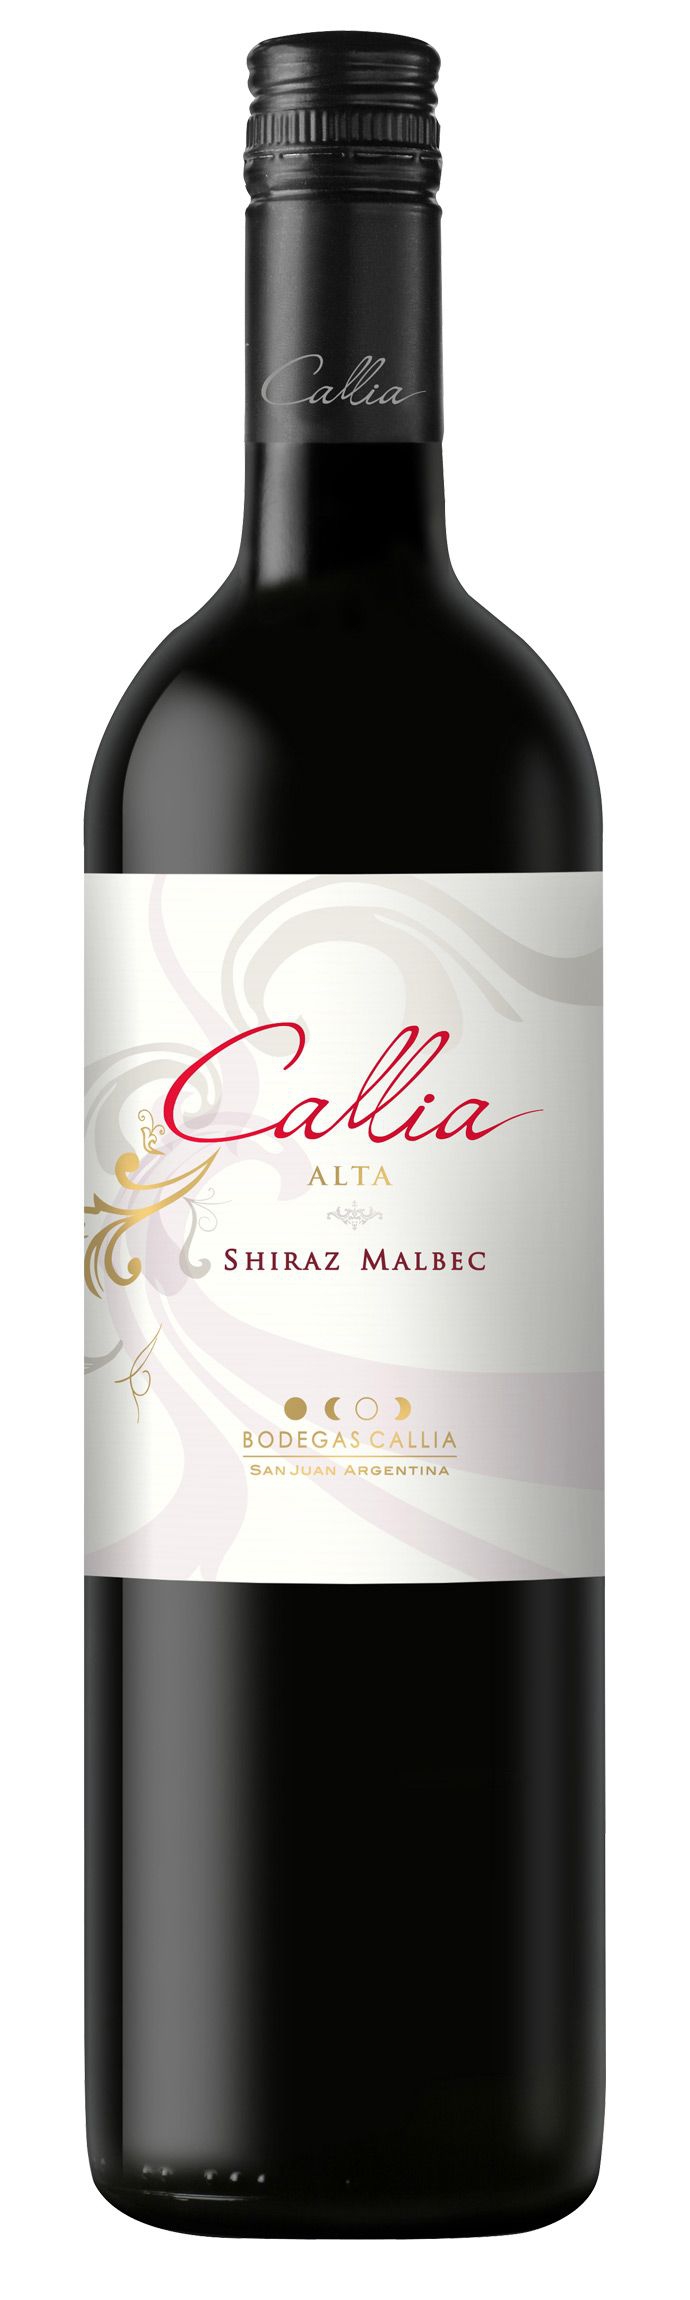 Bodegas Callia Alta Shiraz argentin vörösbor 2015 0,75L